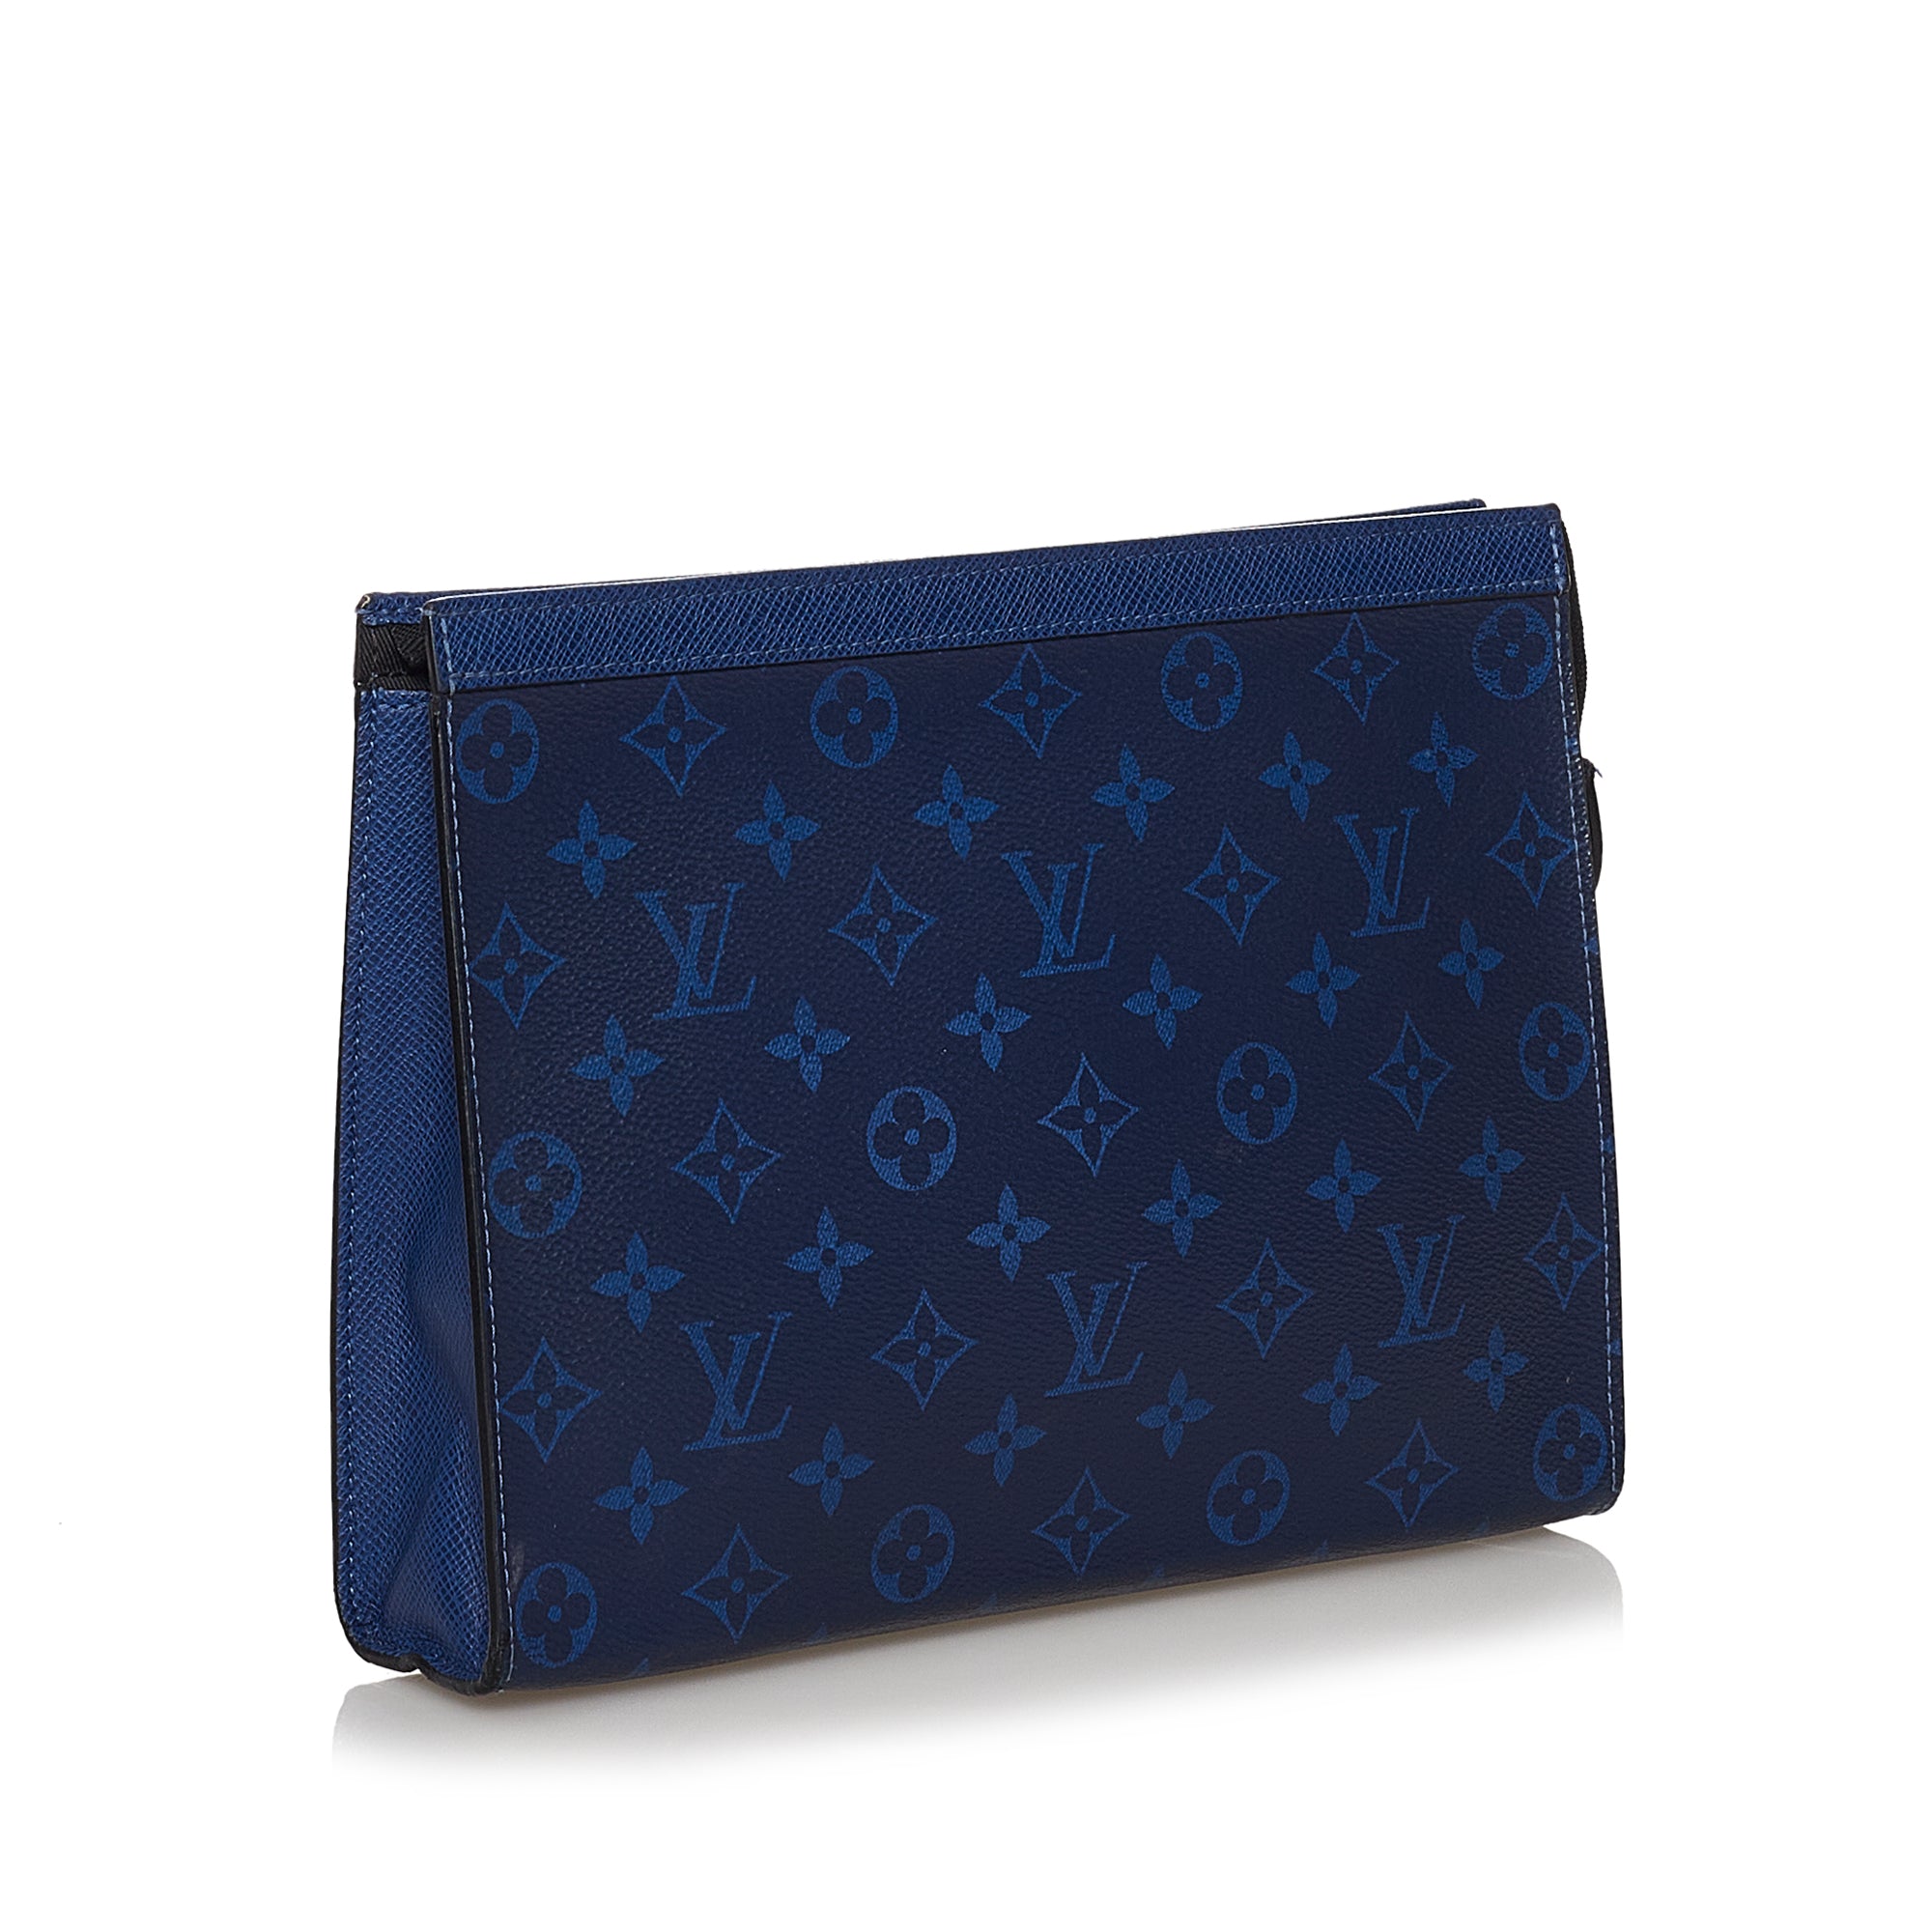 Authenticated Louis Vuitton Monogram Nigo Voyage Blue Denim Fabric